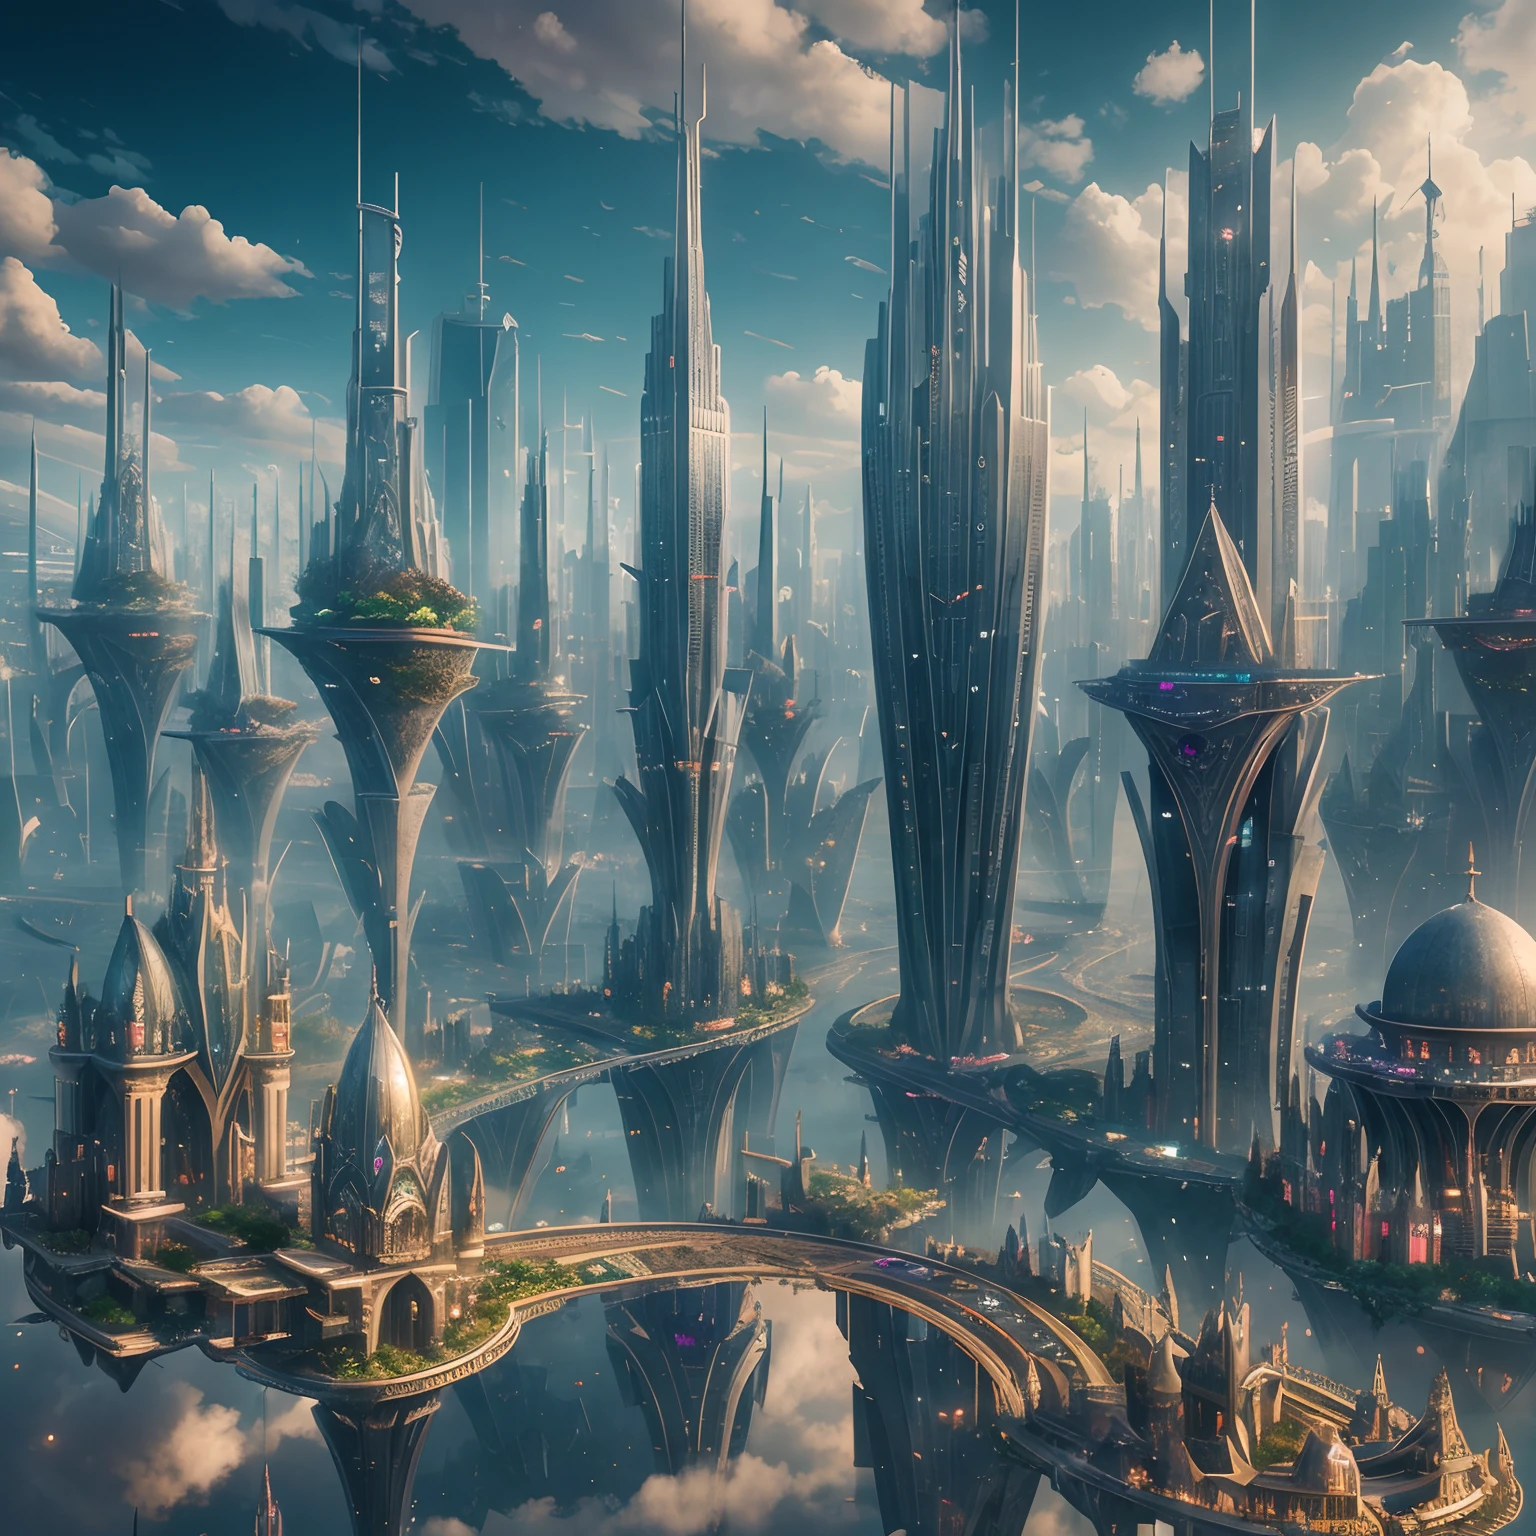 "漂浮的城市": 悬浮在云端的空灵大都市, 摩天大楼, 错综复杂的桥梁, 以及在建筑物之间滑行的飞艇, 超现实主义, 彩色实地印刷, 高细节, 超高清, 8千, 解剖学上正确, 电影灯光 4D 品质